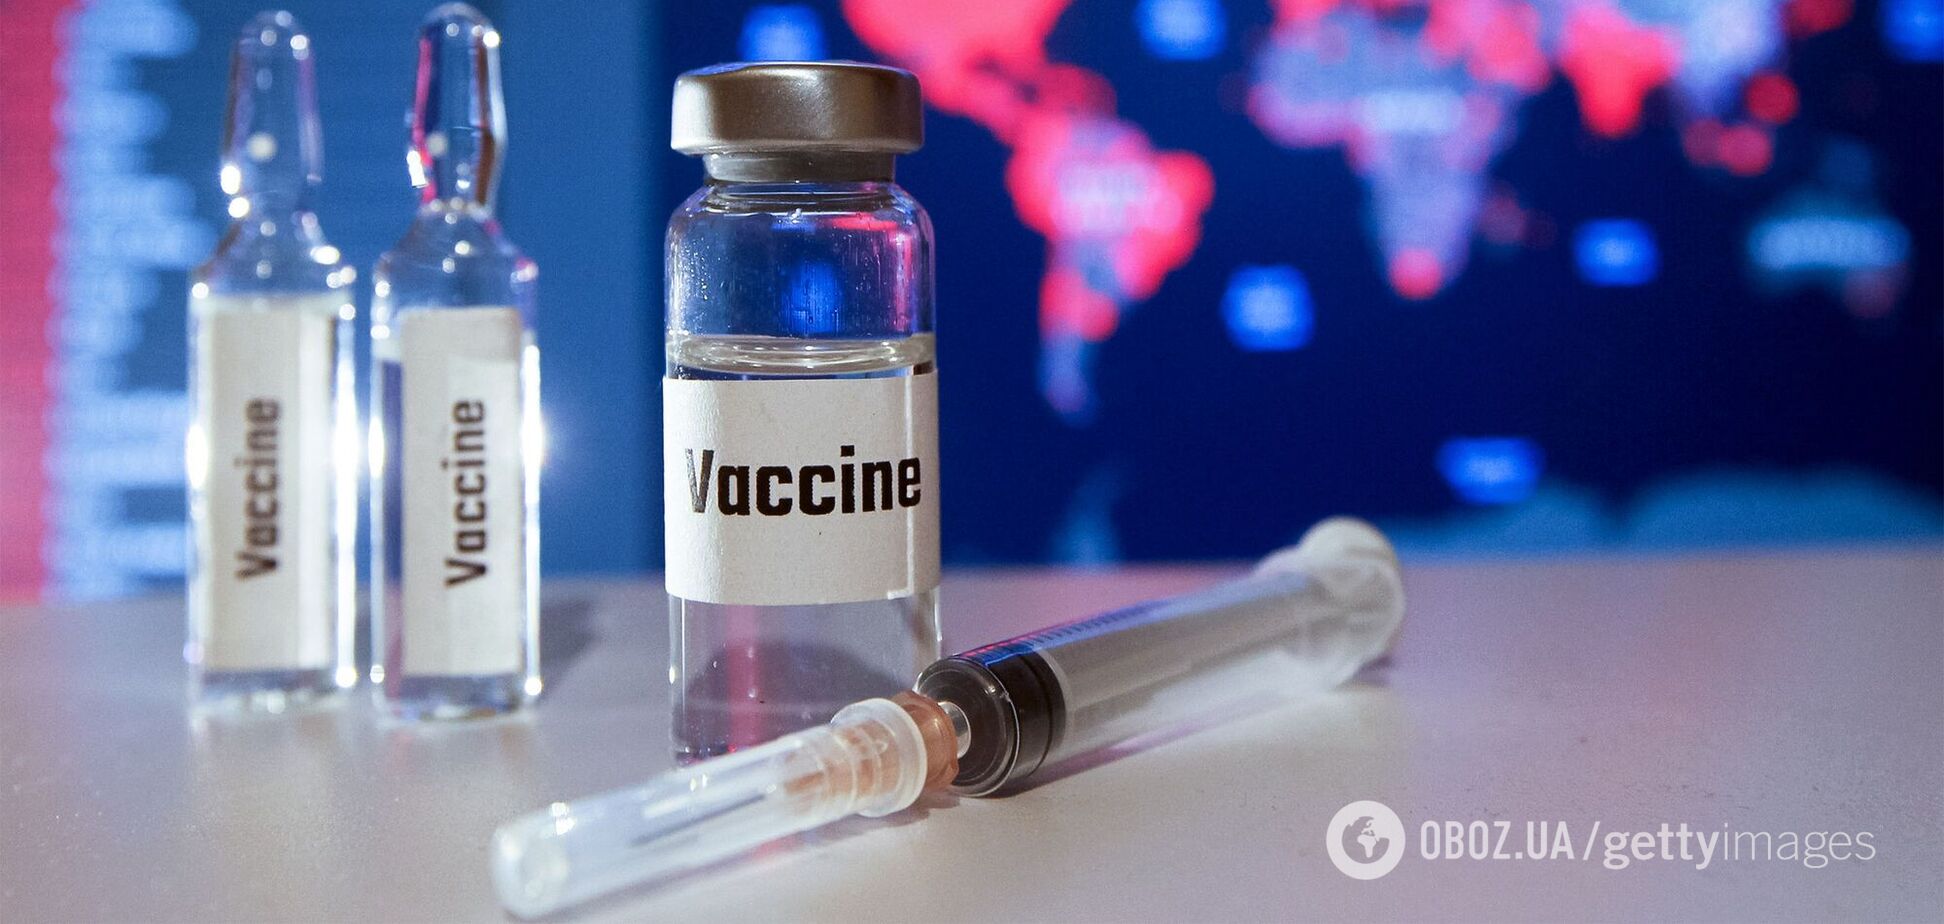 О новых вакцинах, которые нас должны спасти